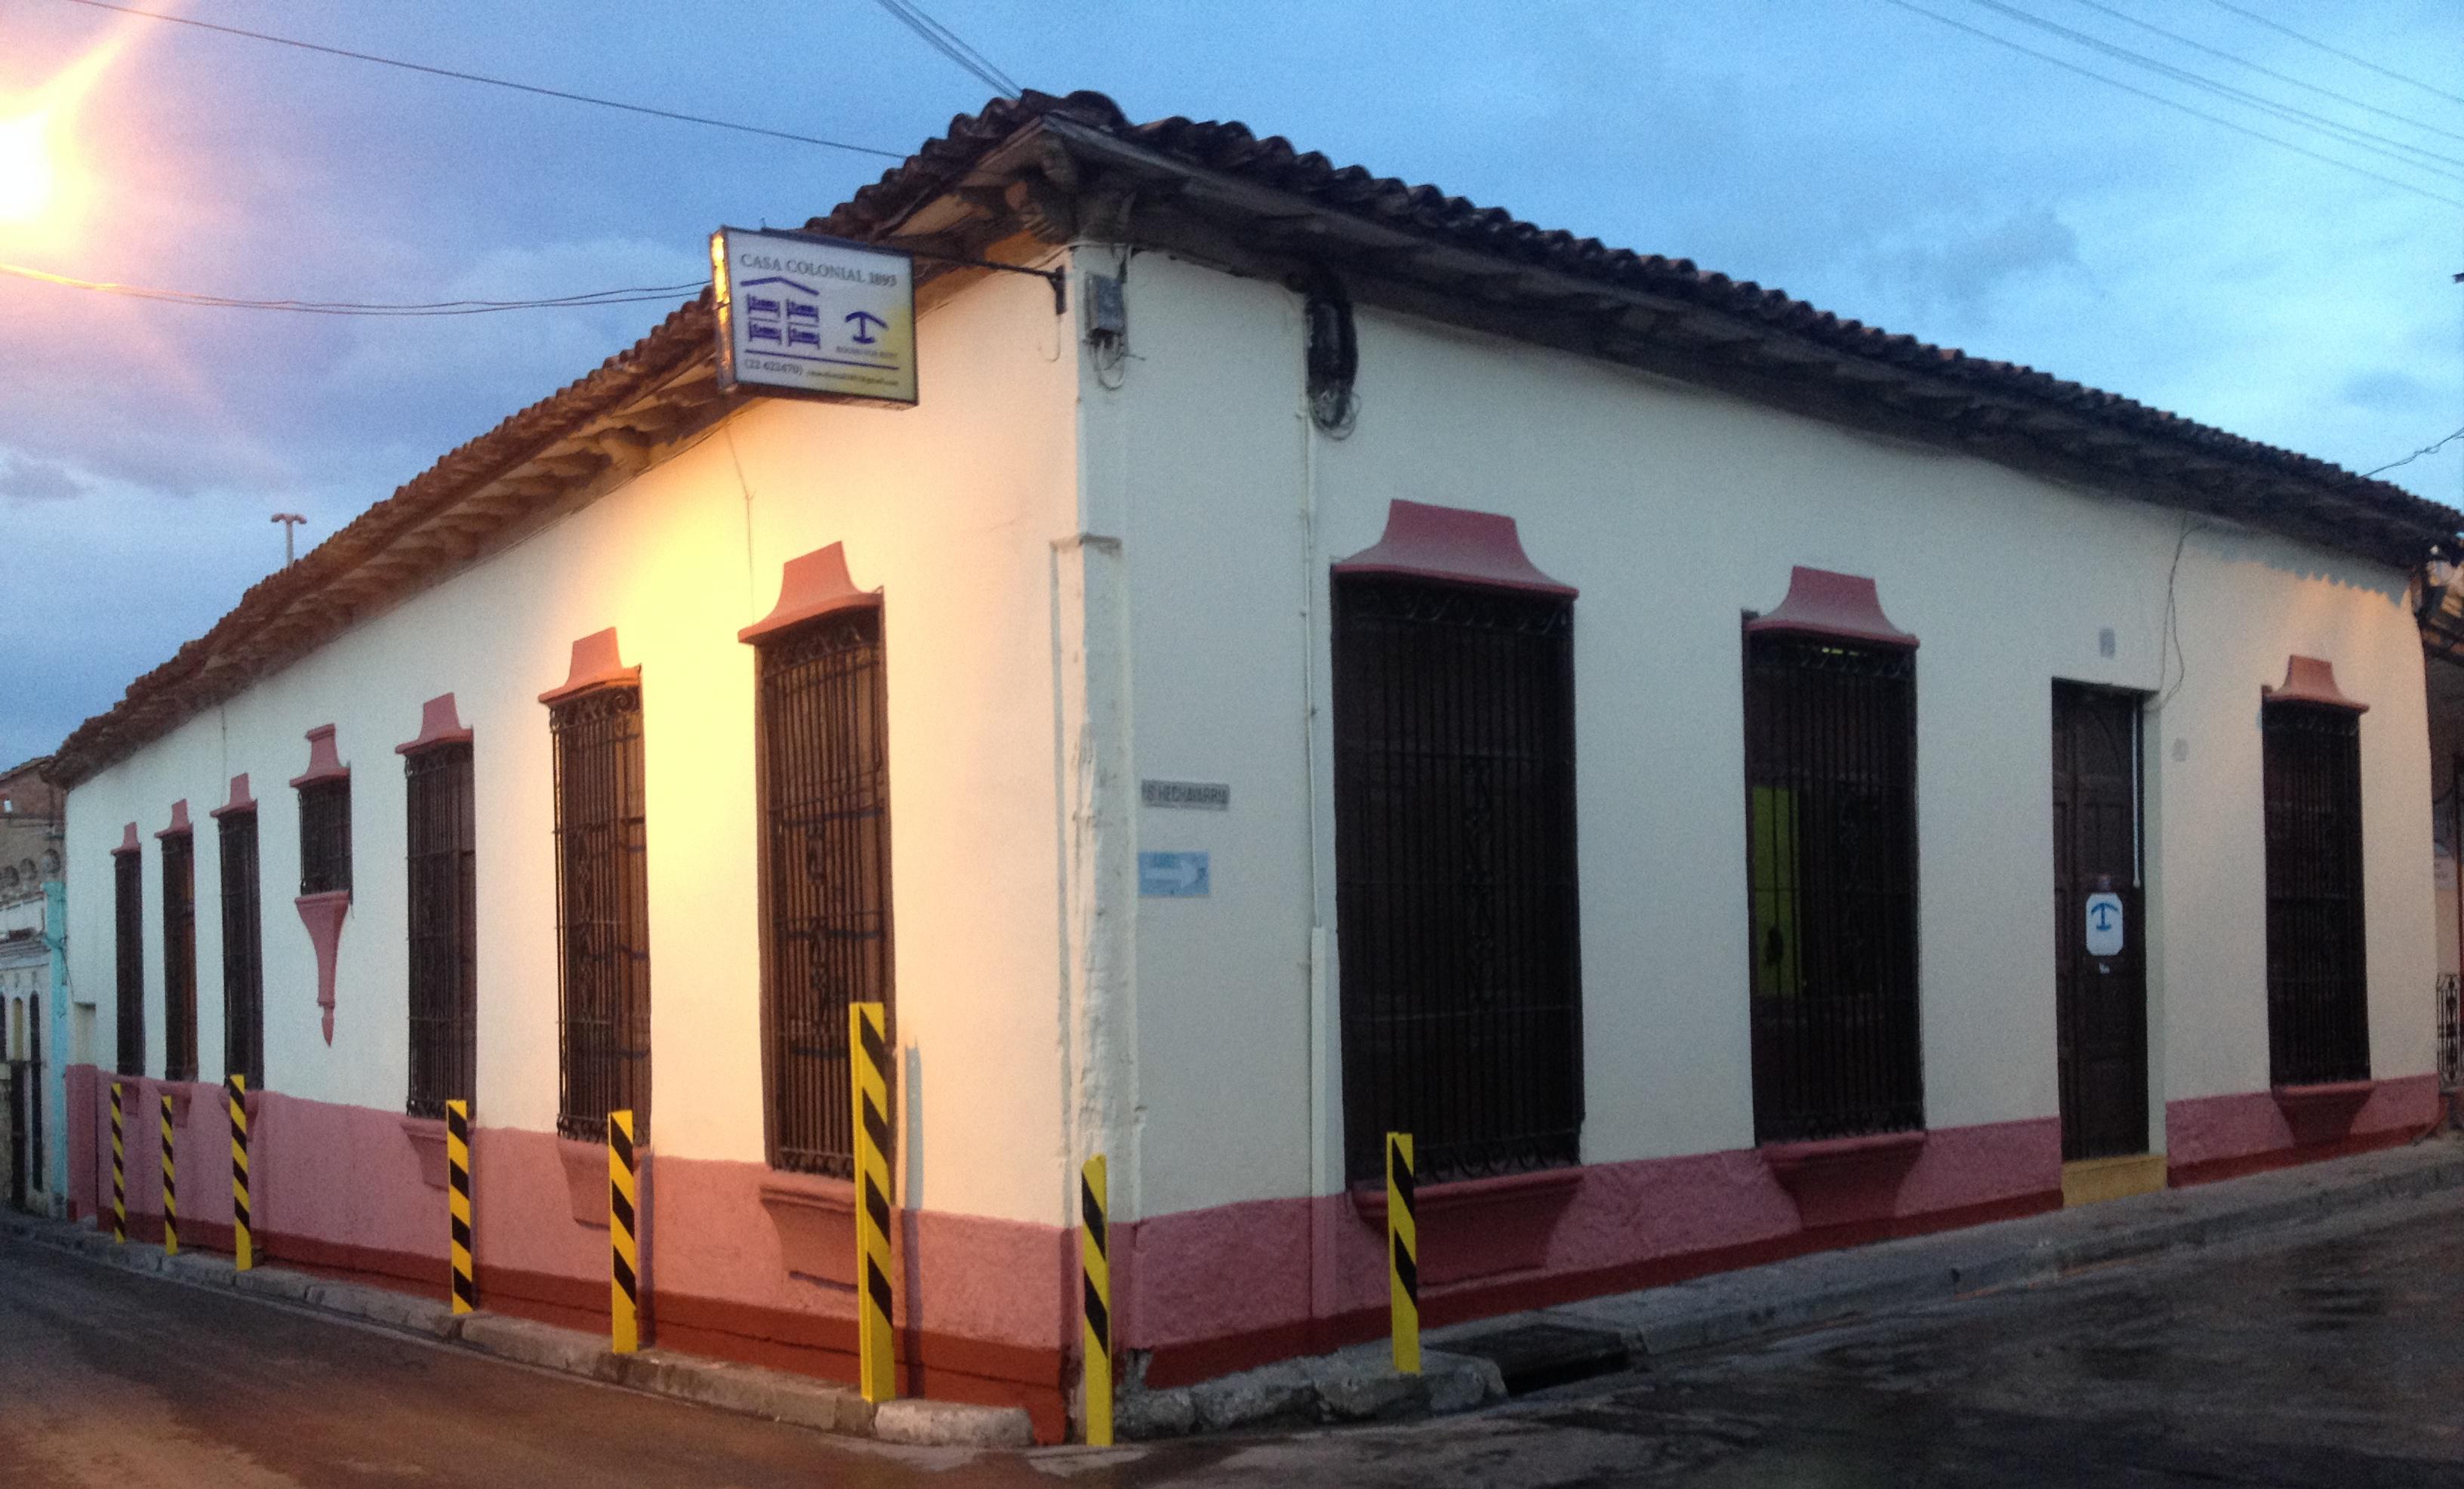 Casa Colonial 1893 (Casa Completa, 7 Habitaciones) - Cuba